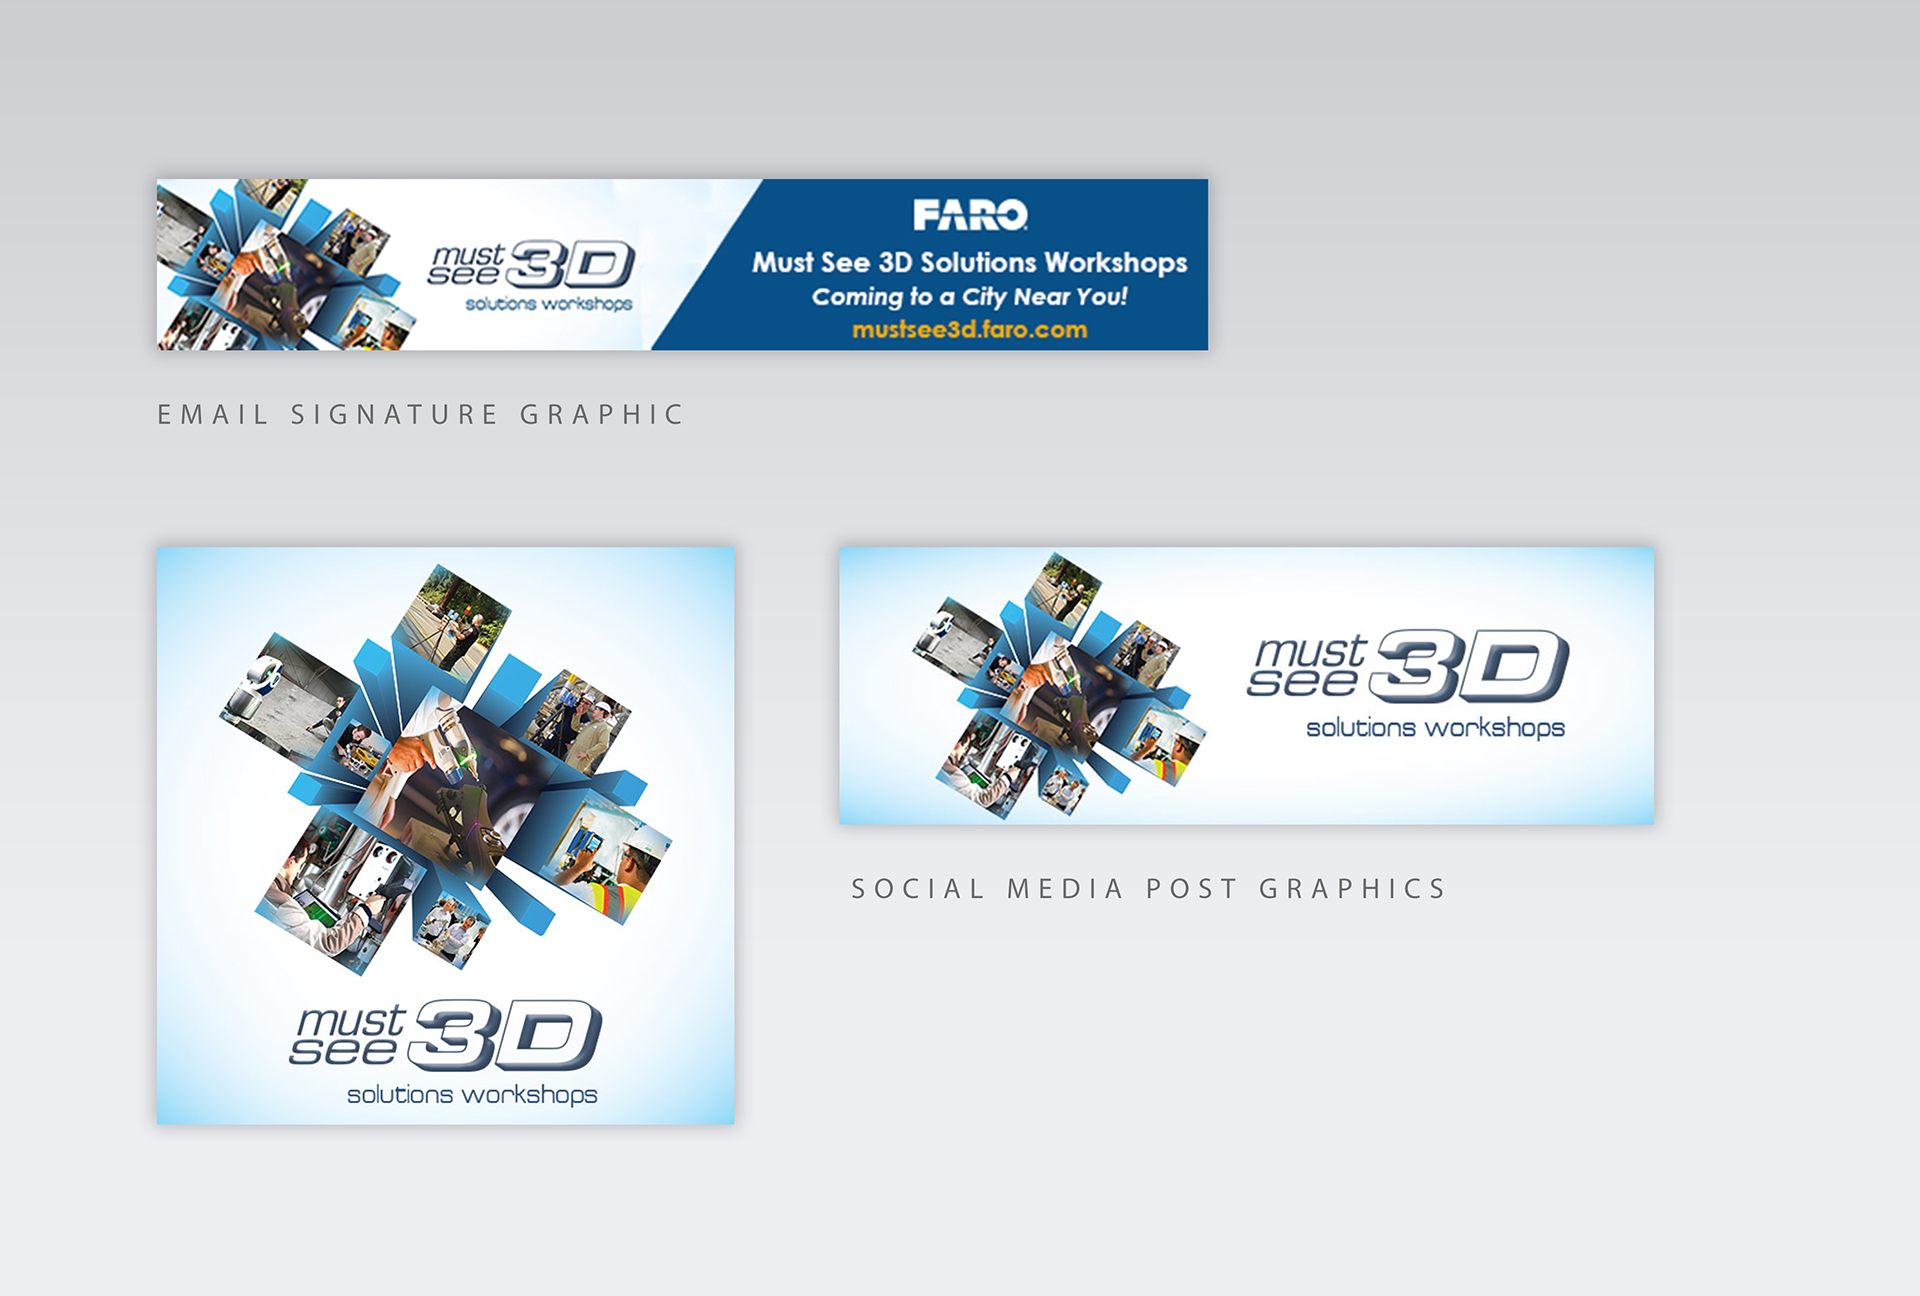 FARO_3D_Campaign_social